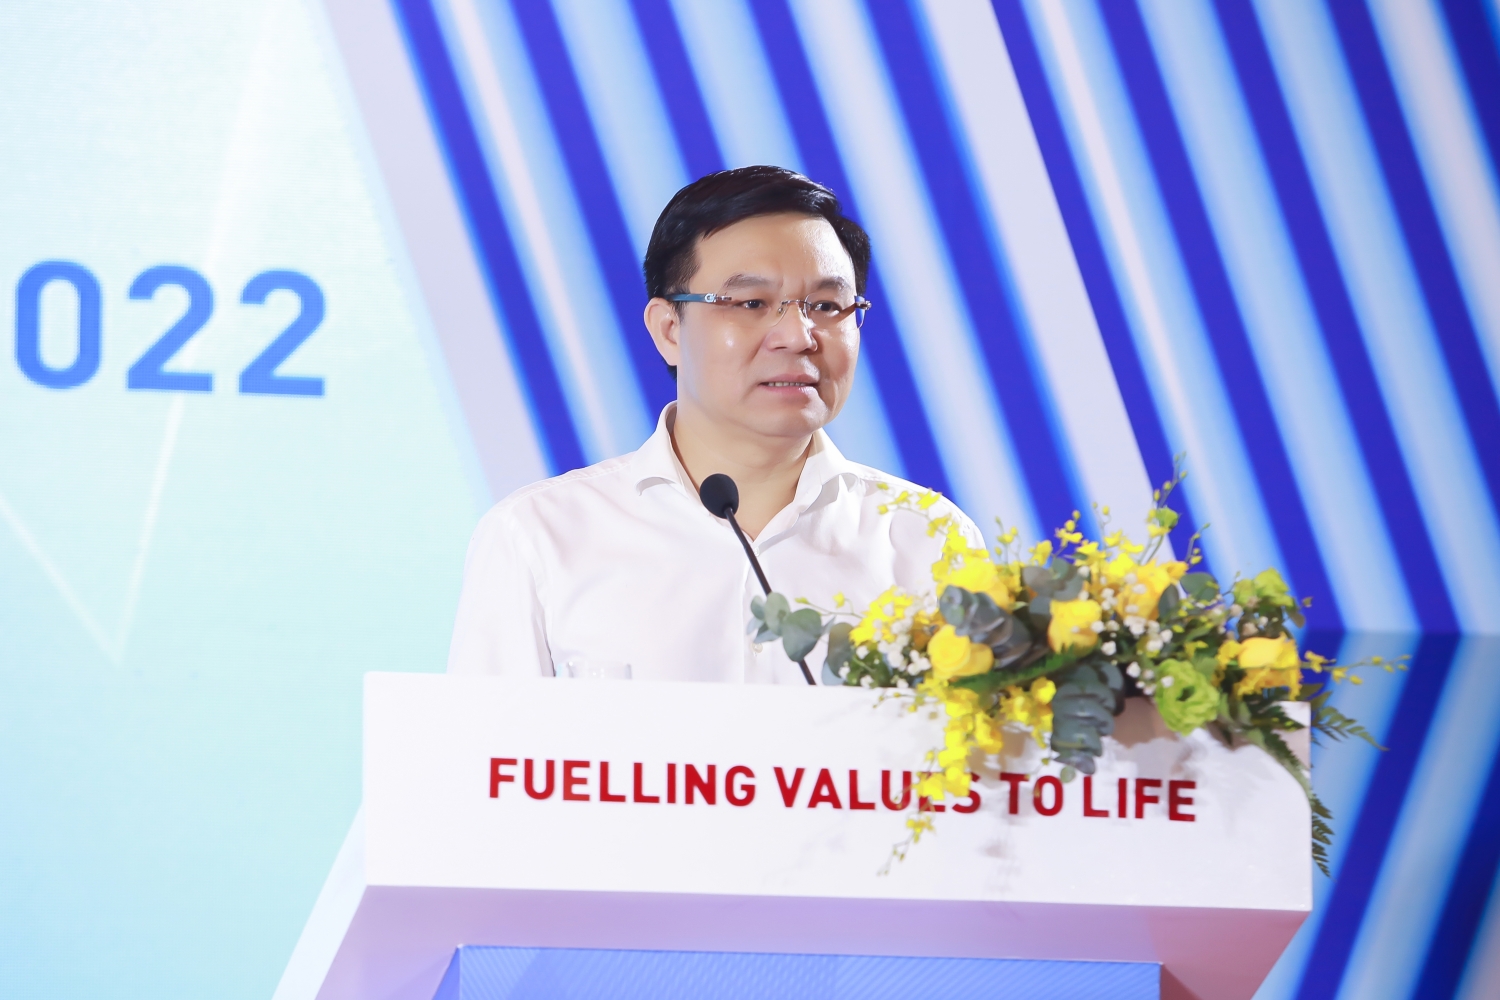 Đại diện cổ đông lớn của PV GAS là Tập đoàn Dầu khí Việt Nam, ông Lê Mạnh Hùng – Tổng Giám đốc PVN phát biểu ý kiến, khẳng định Tập đoàn đánh giá cao những nỗ lực của PV GAS